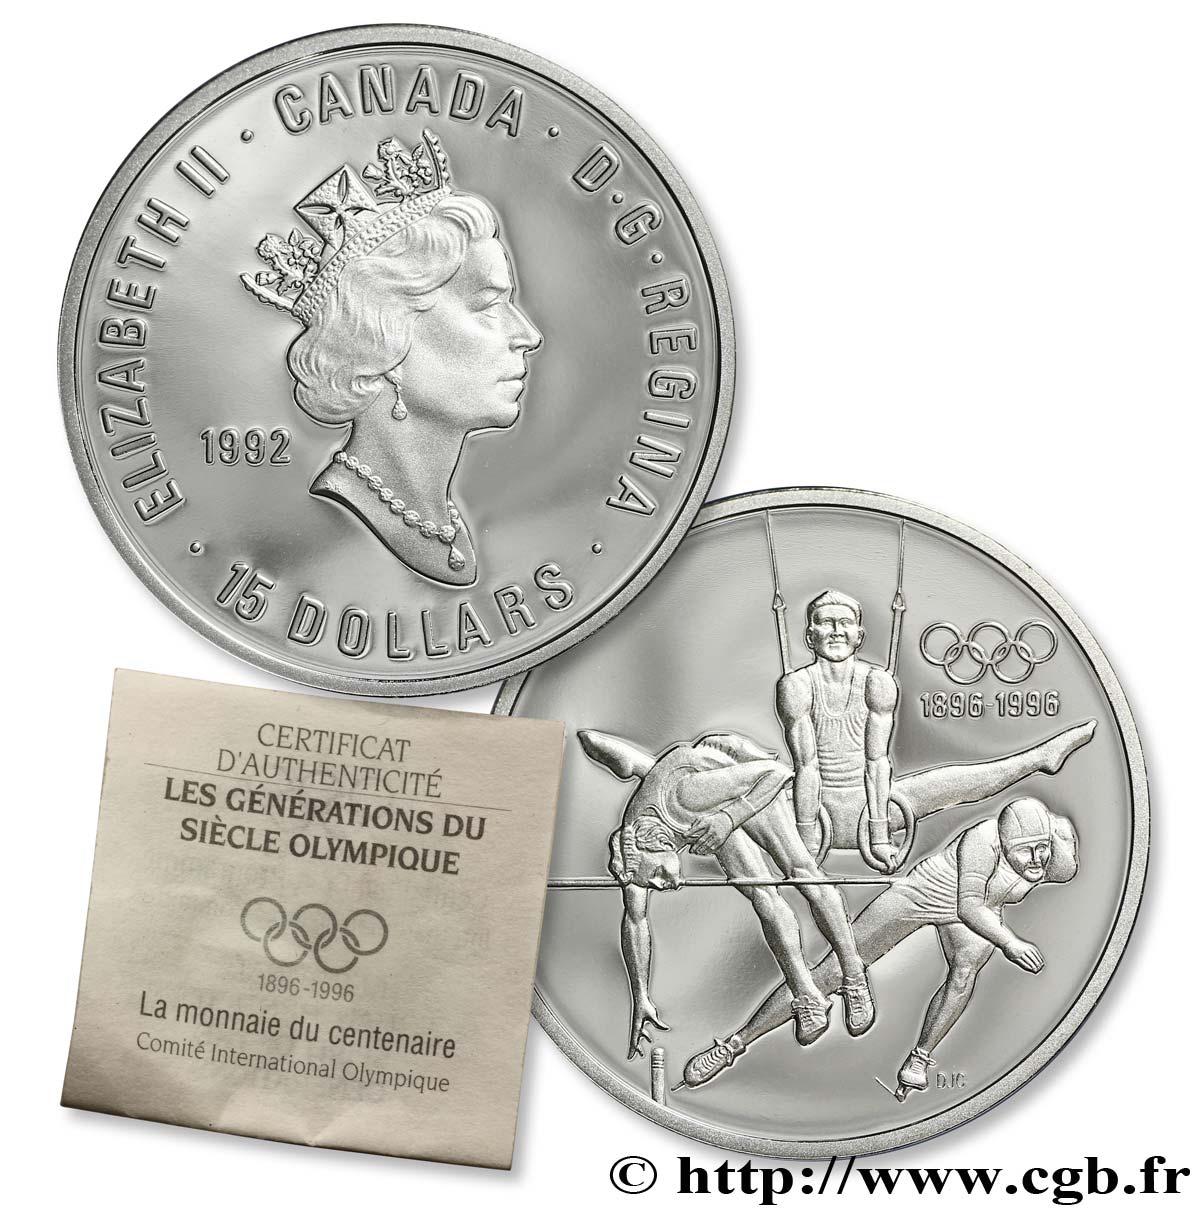 CANADá
 15 Dollars BE Elisabeth II / Jeux Olympiques 1992, saut en hauteur, anneaux, patin de vitesse 1992  FDC 